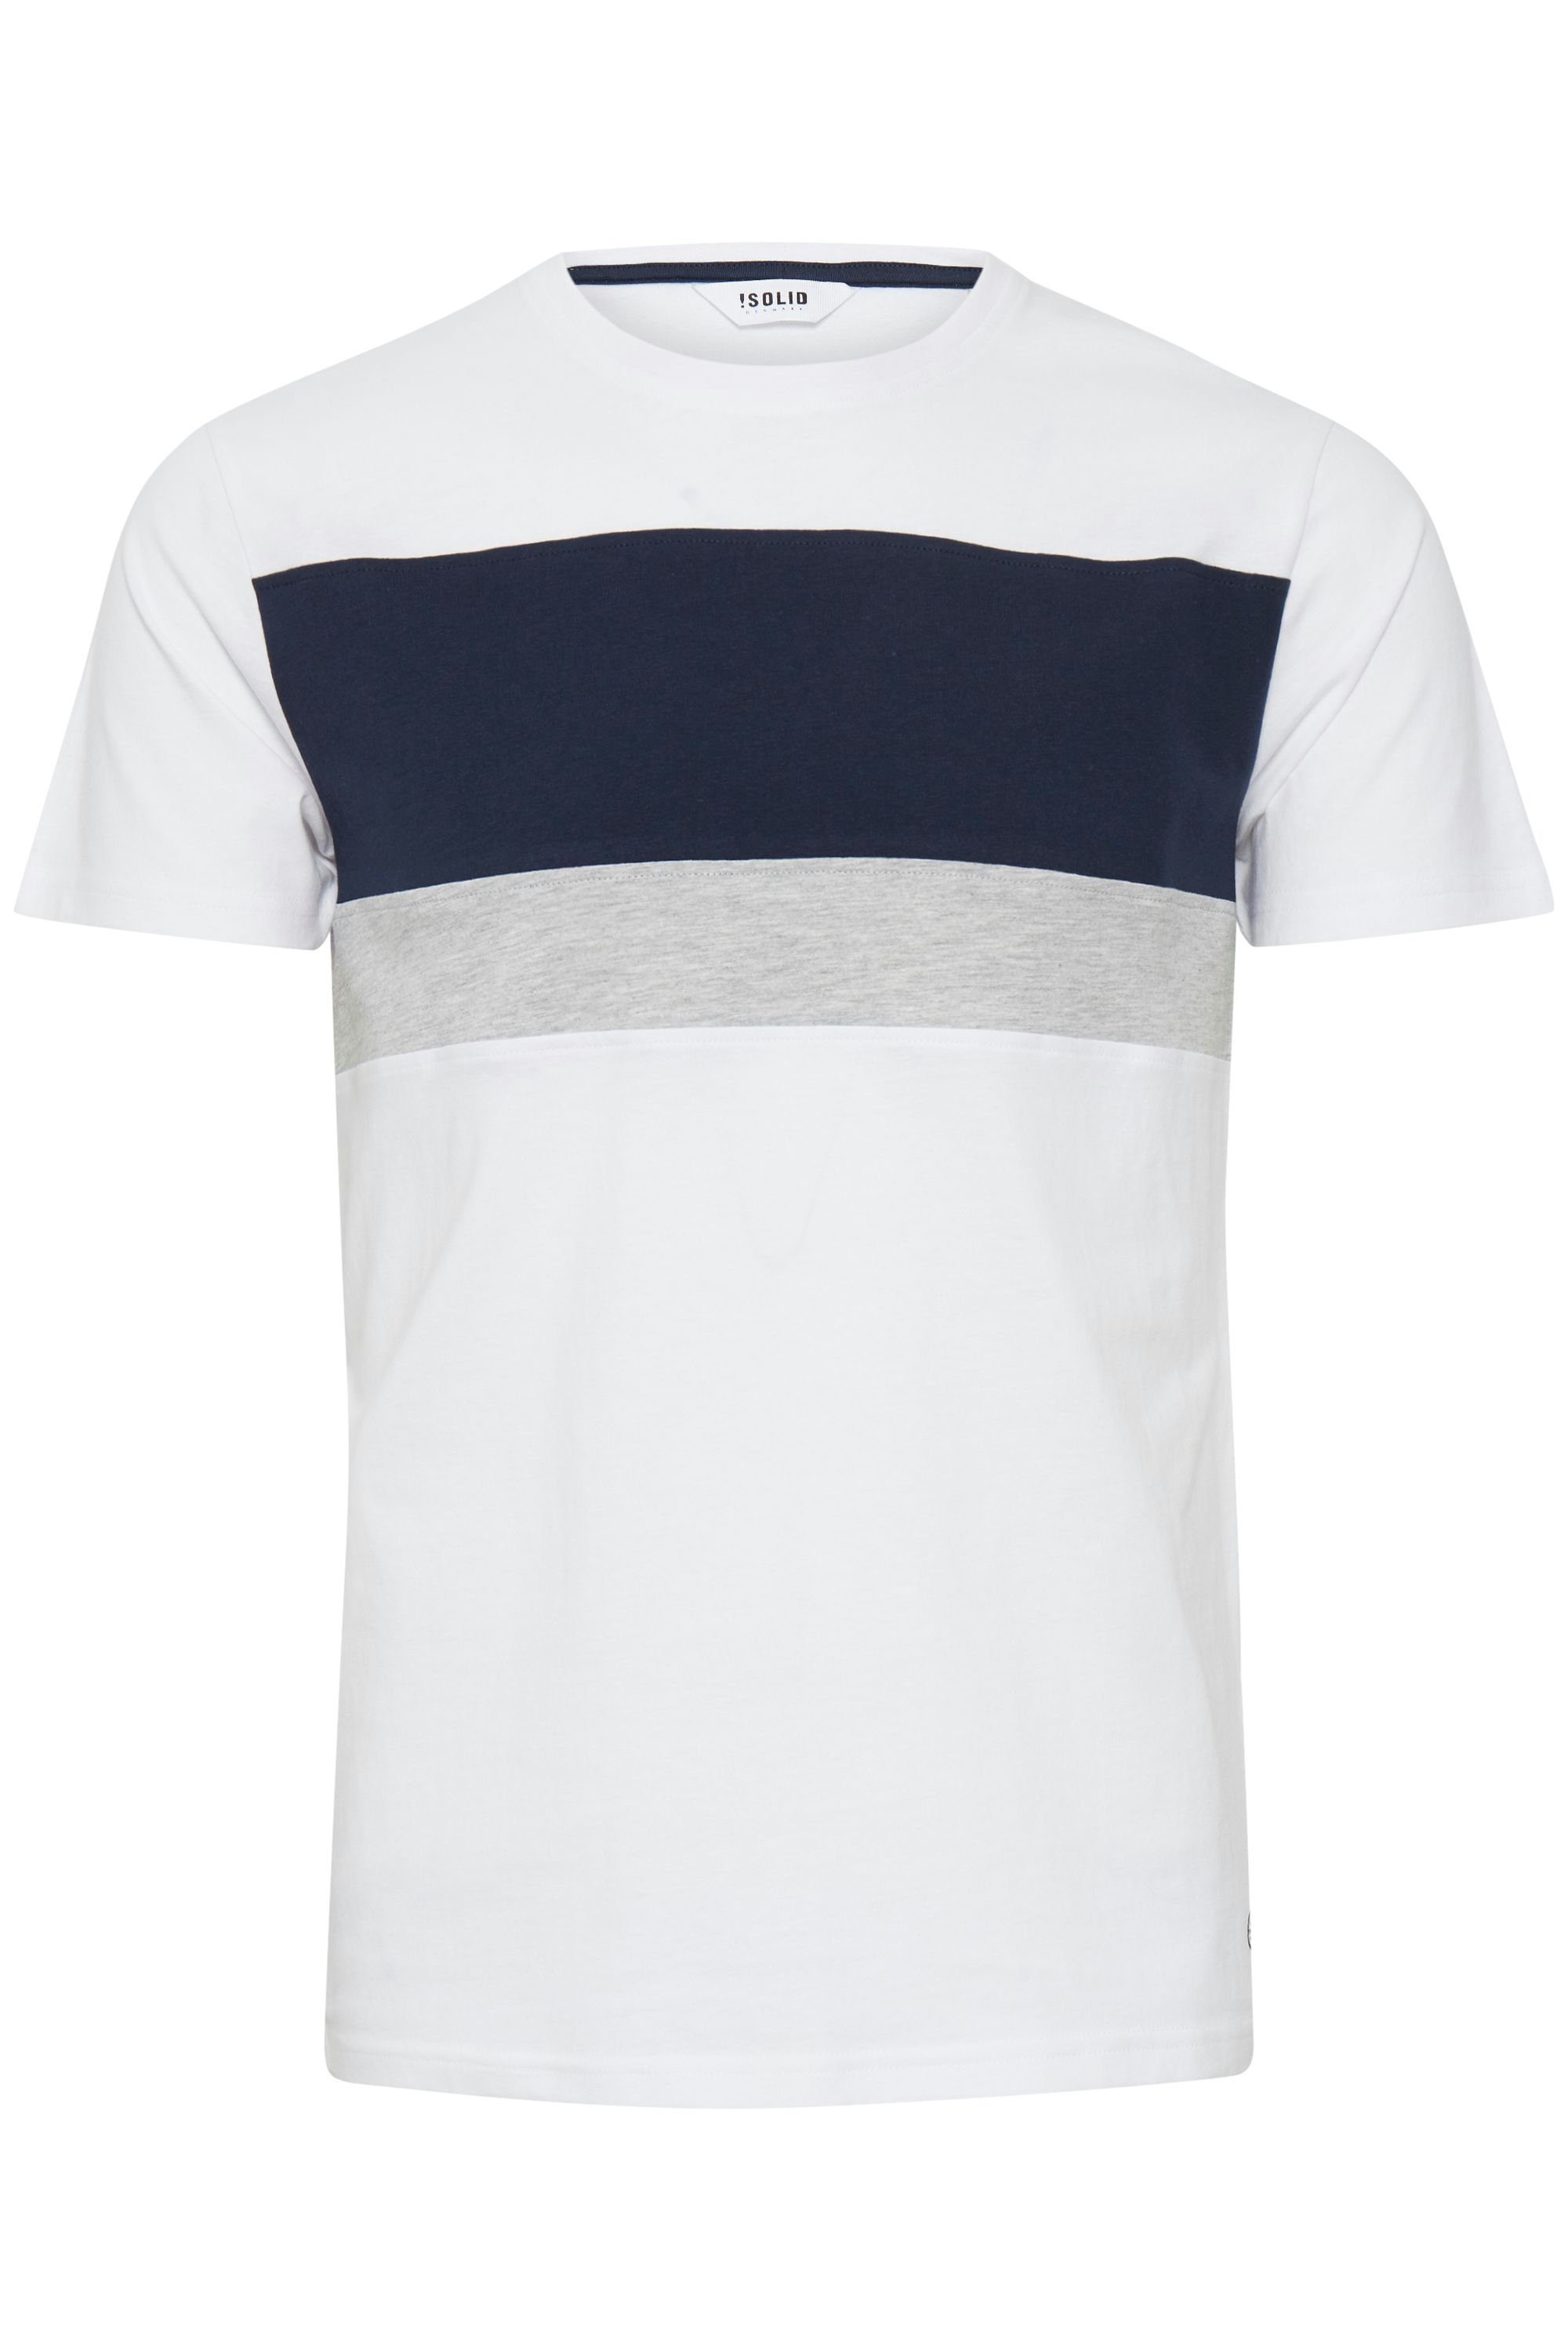 !Solid Rundhalsshirt SDSascha T-Shirt in Tricolor Streifenoptik White (110601) | T-Shirts